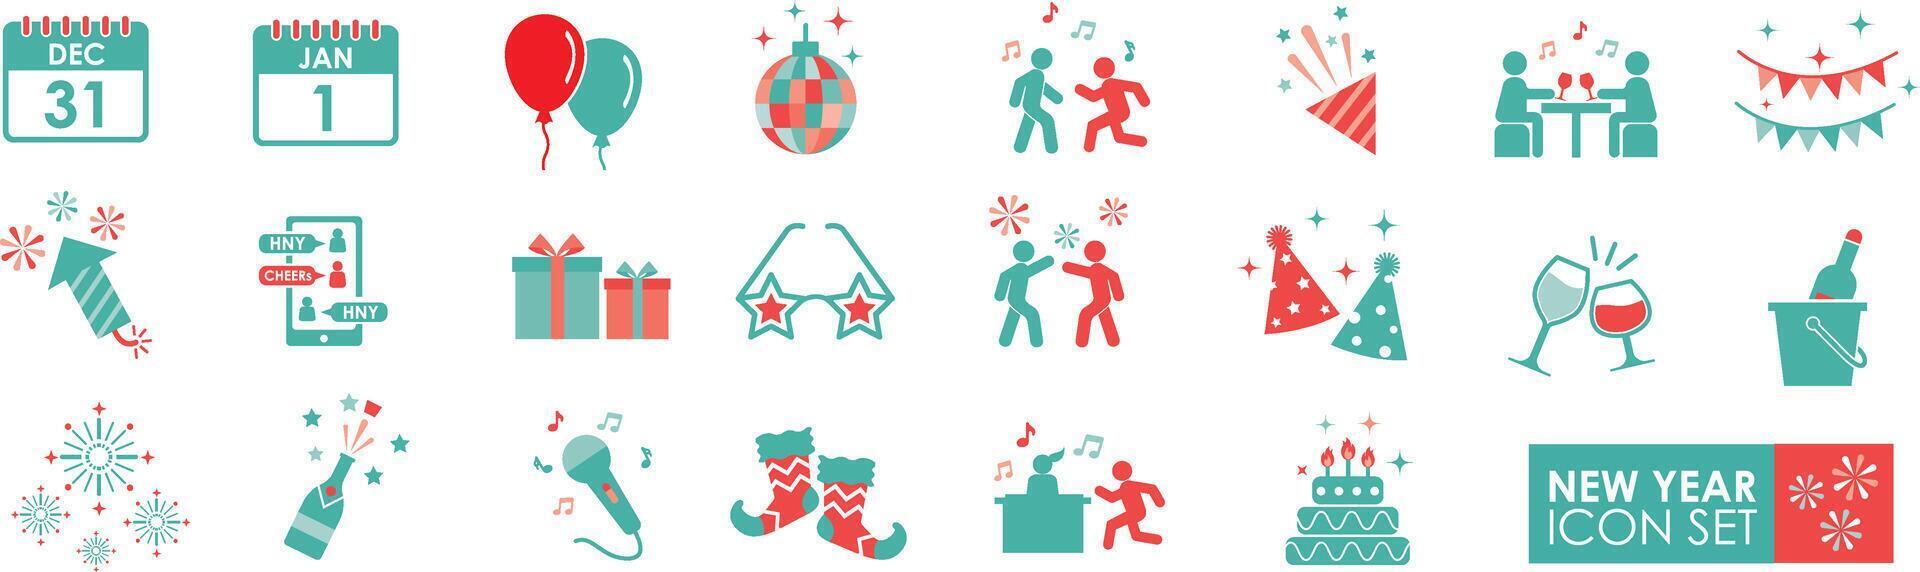 Neu Jahr solide Symbole Vektor Sammlung. enthält Feierlichkeiten, Feuerwerk, Sekt, Flaggen, Beifall, Parteien, Geschenke, Sekt, Überraschungen, Veranstaltungen, und Luftballons.